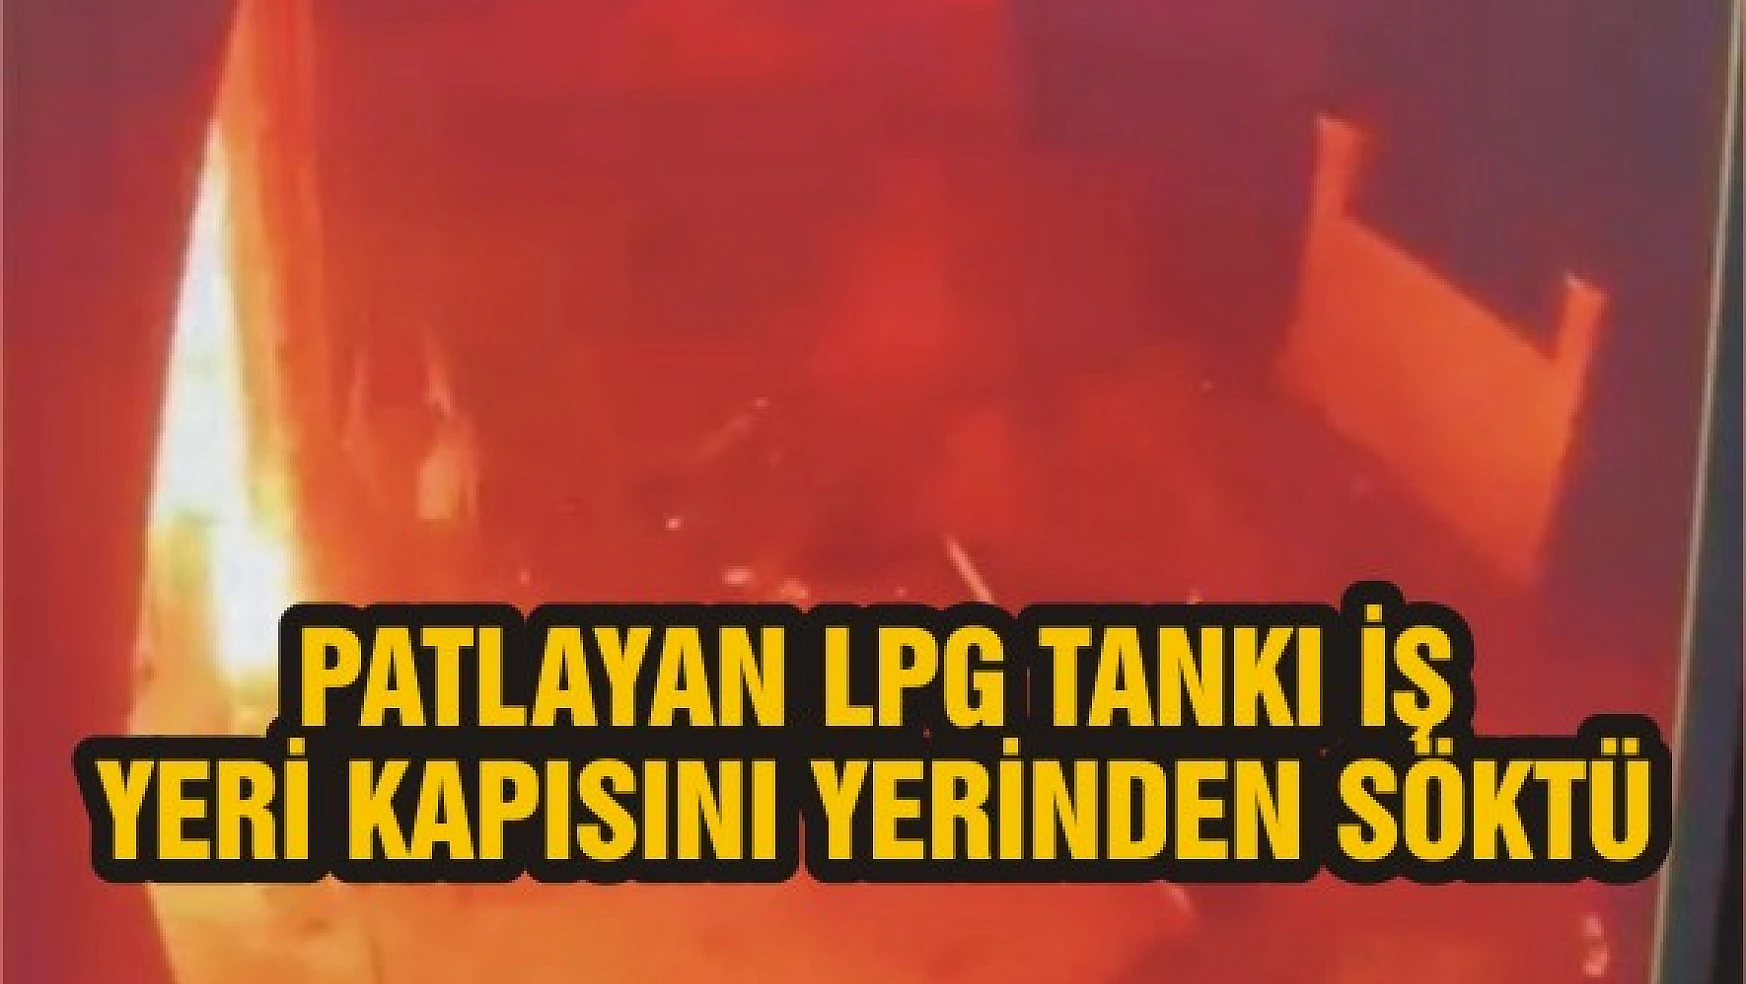 Patlayan LPG tankı iş yeri kapısını yerinden söktü